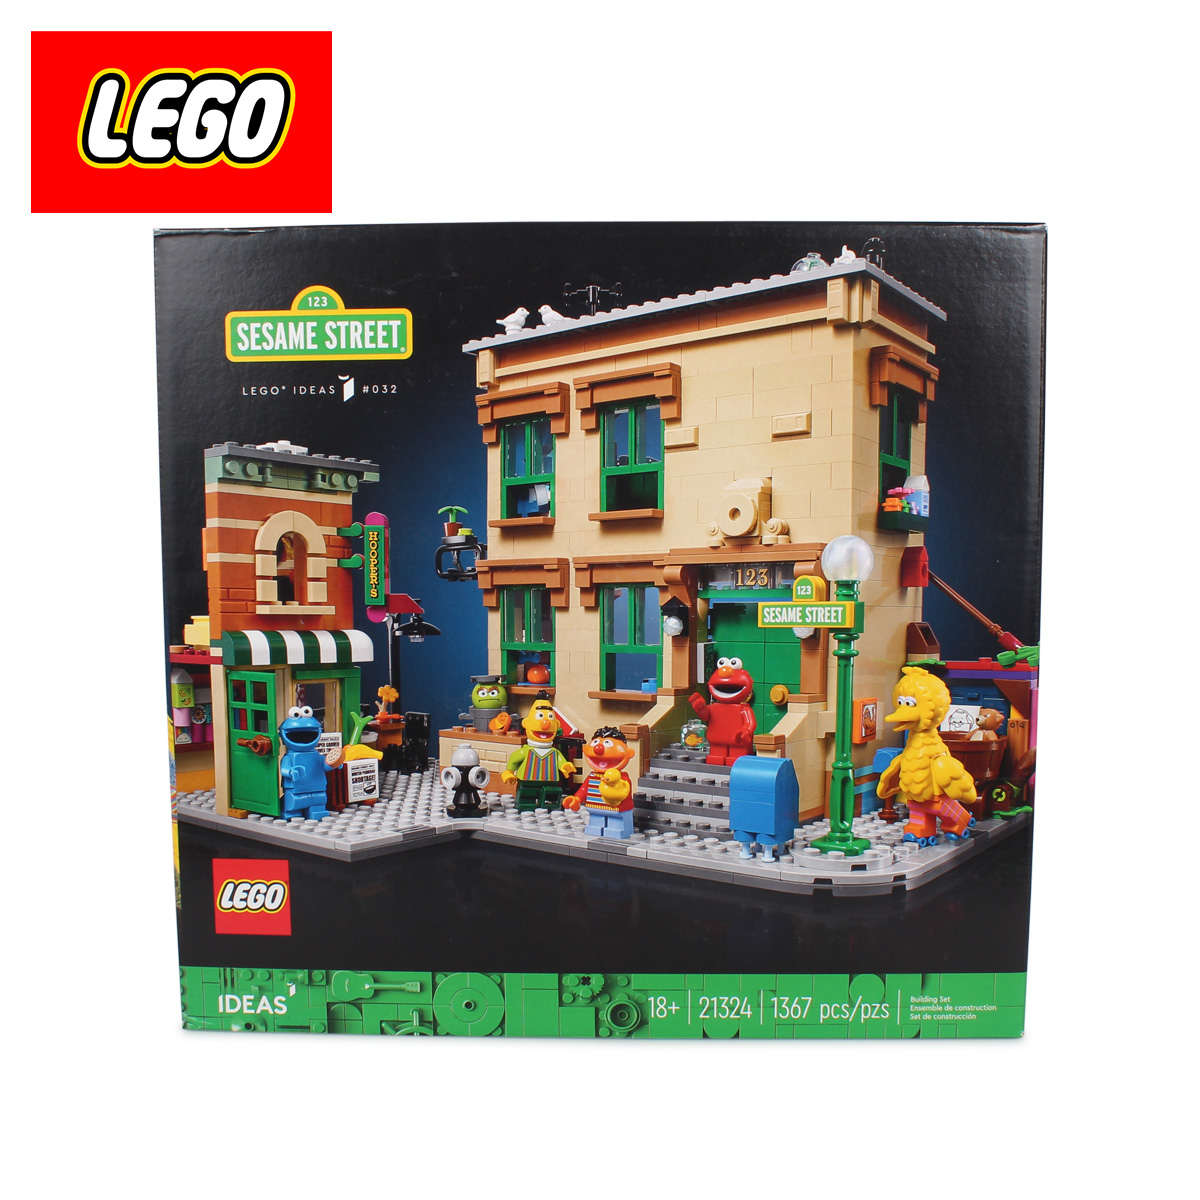 楽天市場 最大600円offクーポン Lego レゴ アイデア セサミストリート おもちゃ ブロック 遊具 レゴブロック オトナレゴ ホビー 模型 インテリア ディスプレイ おしゃれ Ideas 123 Sesame Street シュガーオンラインショップ